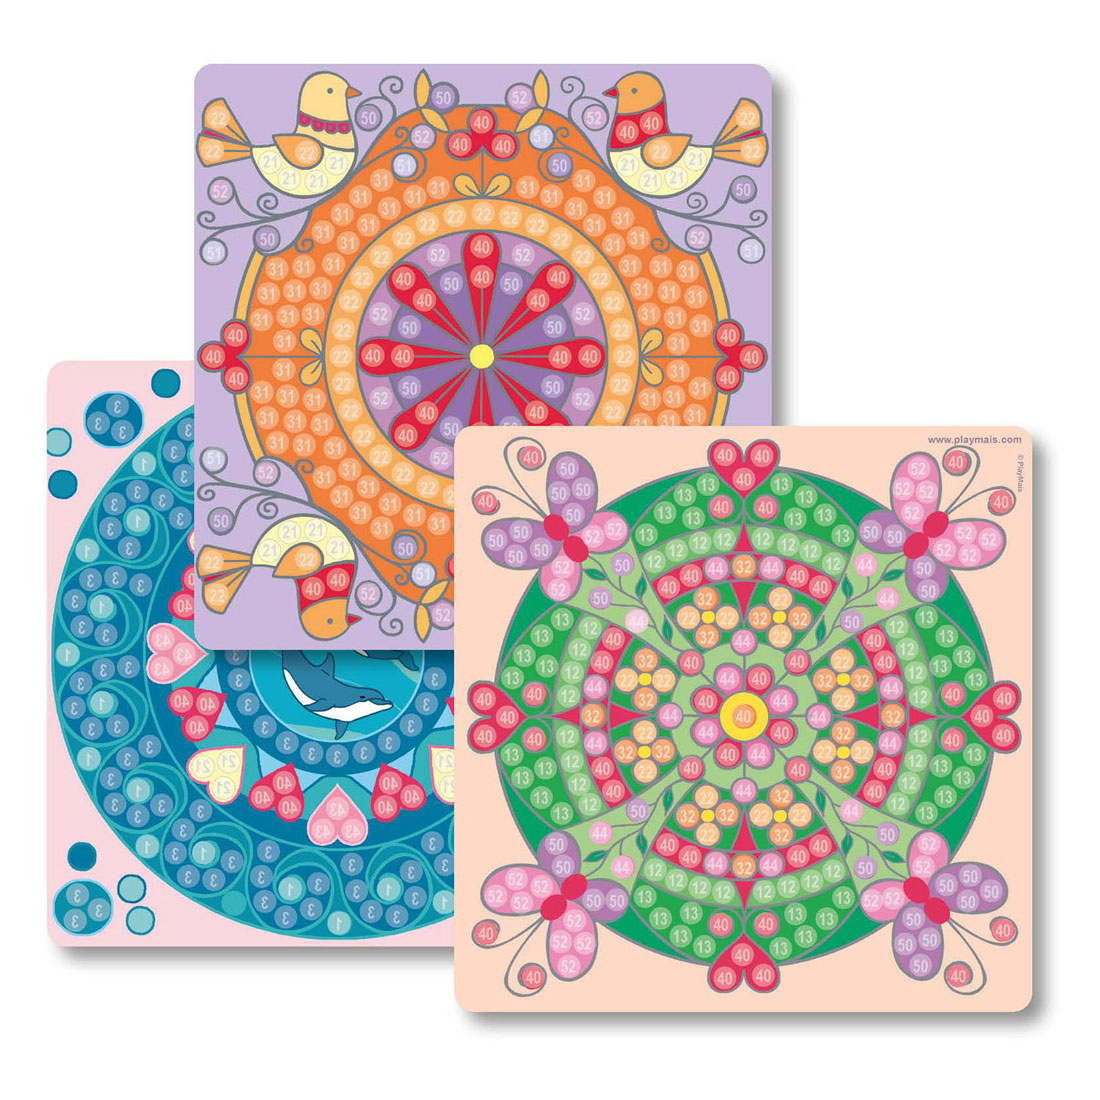 Les cartes mosaïque Playmais décorent un mandala tendance